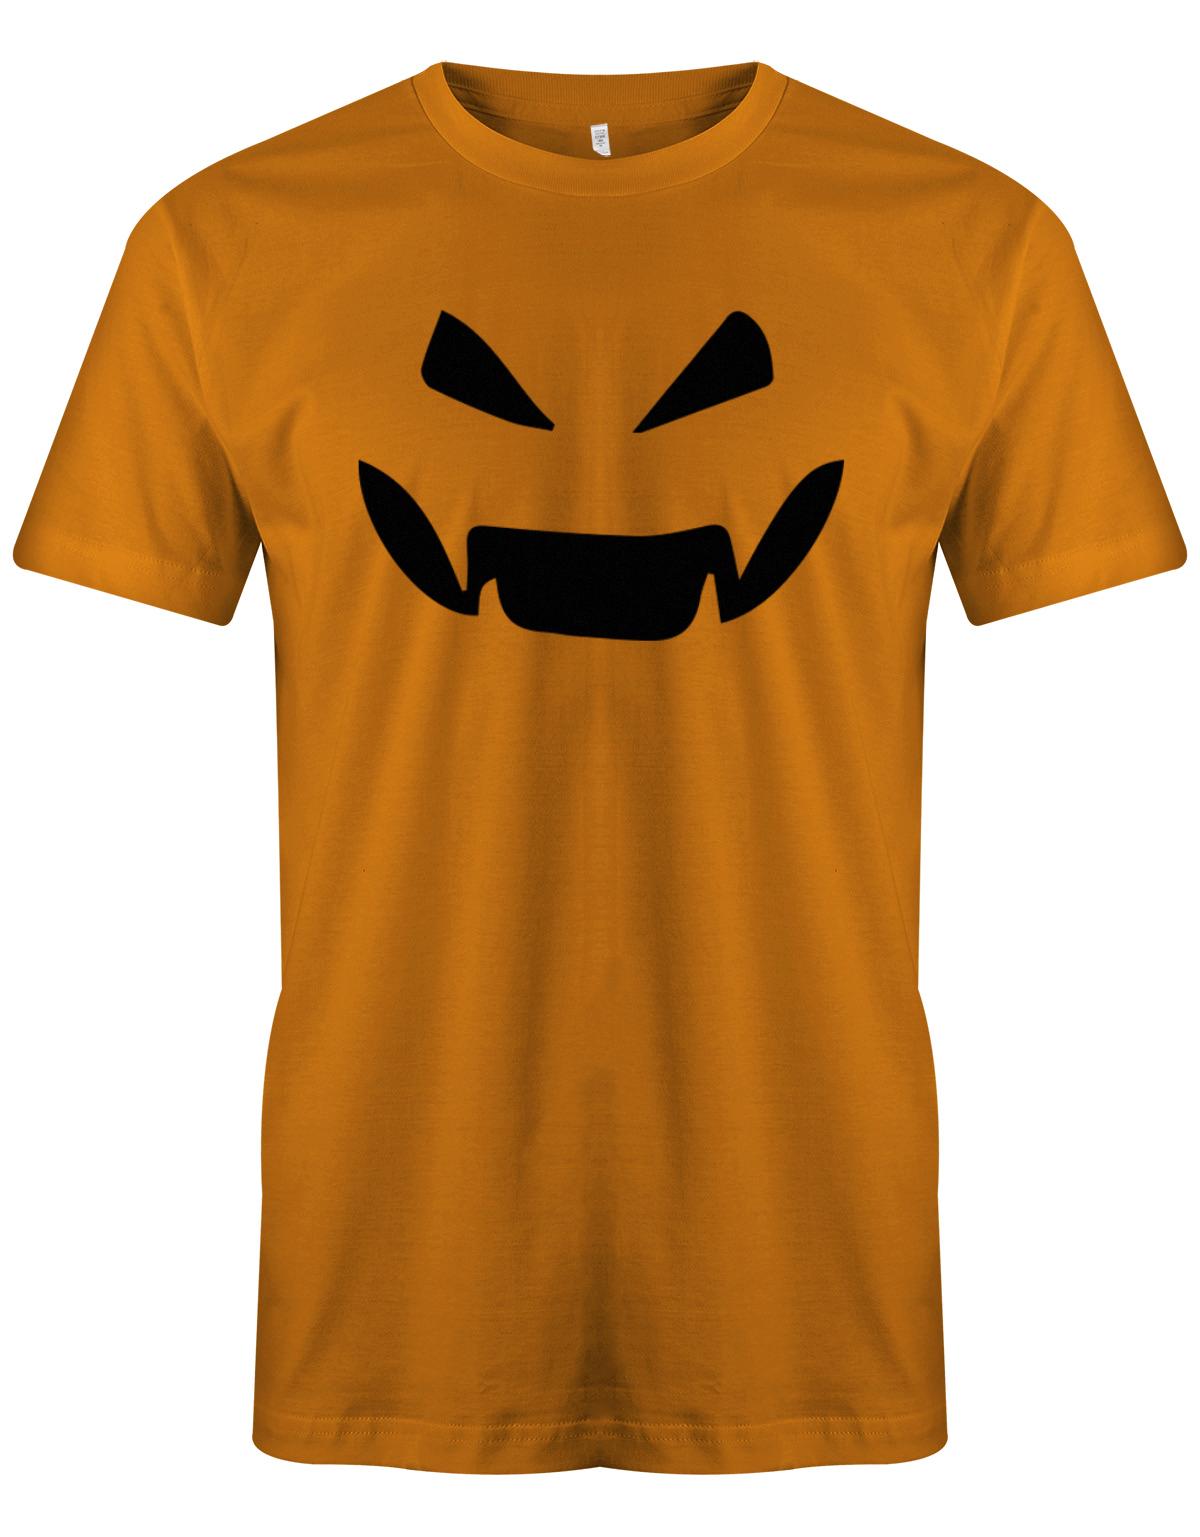 K-rbiskopf-Gruselig-Herren-Shirt-Orange-Halloween-Shirt